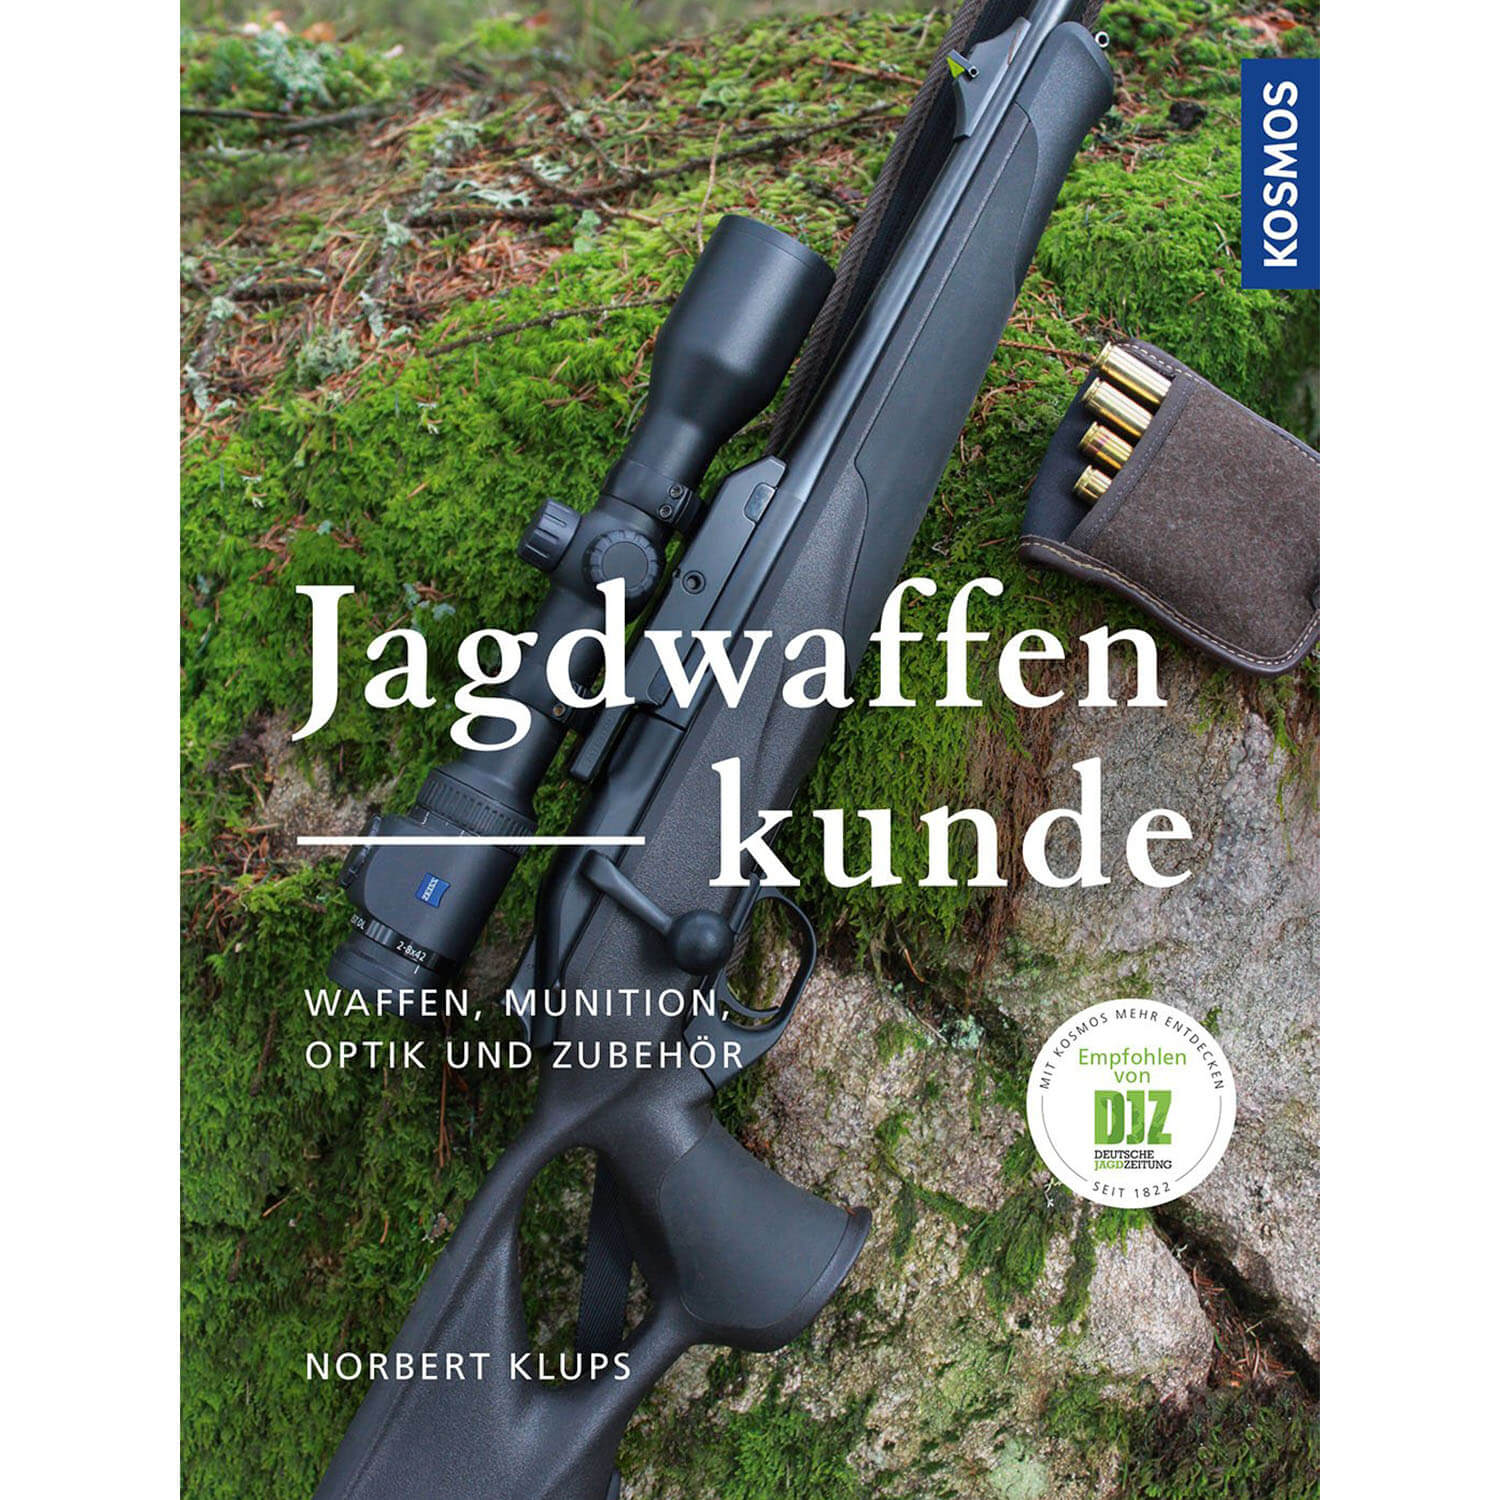 Jagdwaffenkunde - Buch - Norbert Klups - Jagdausrüstung